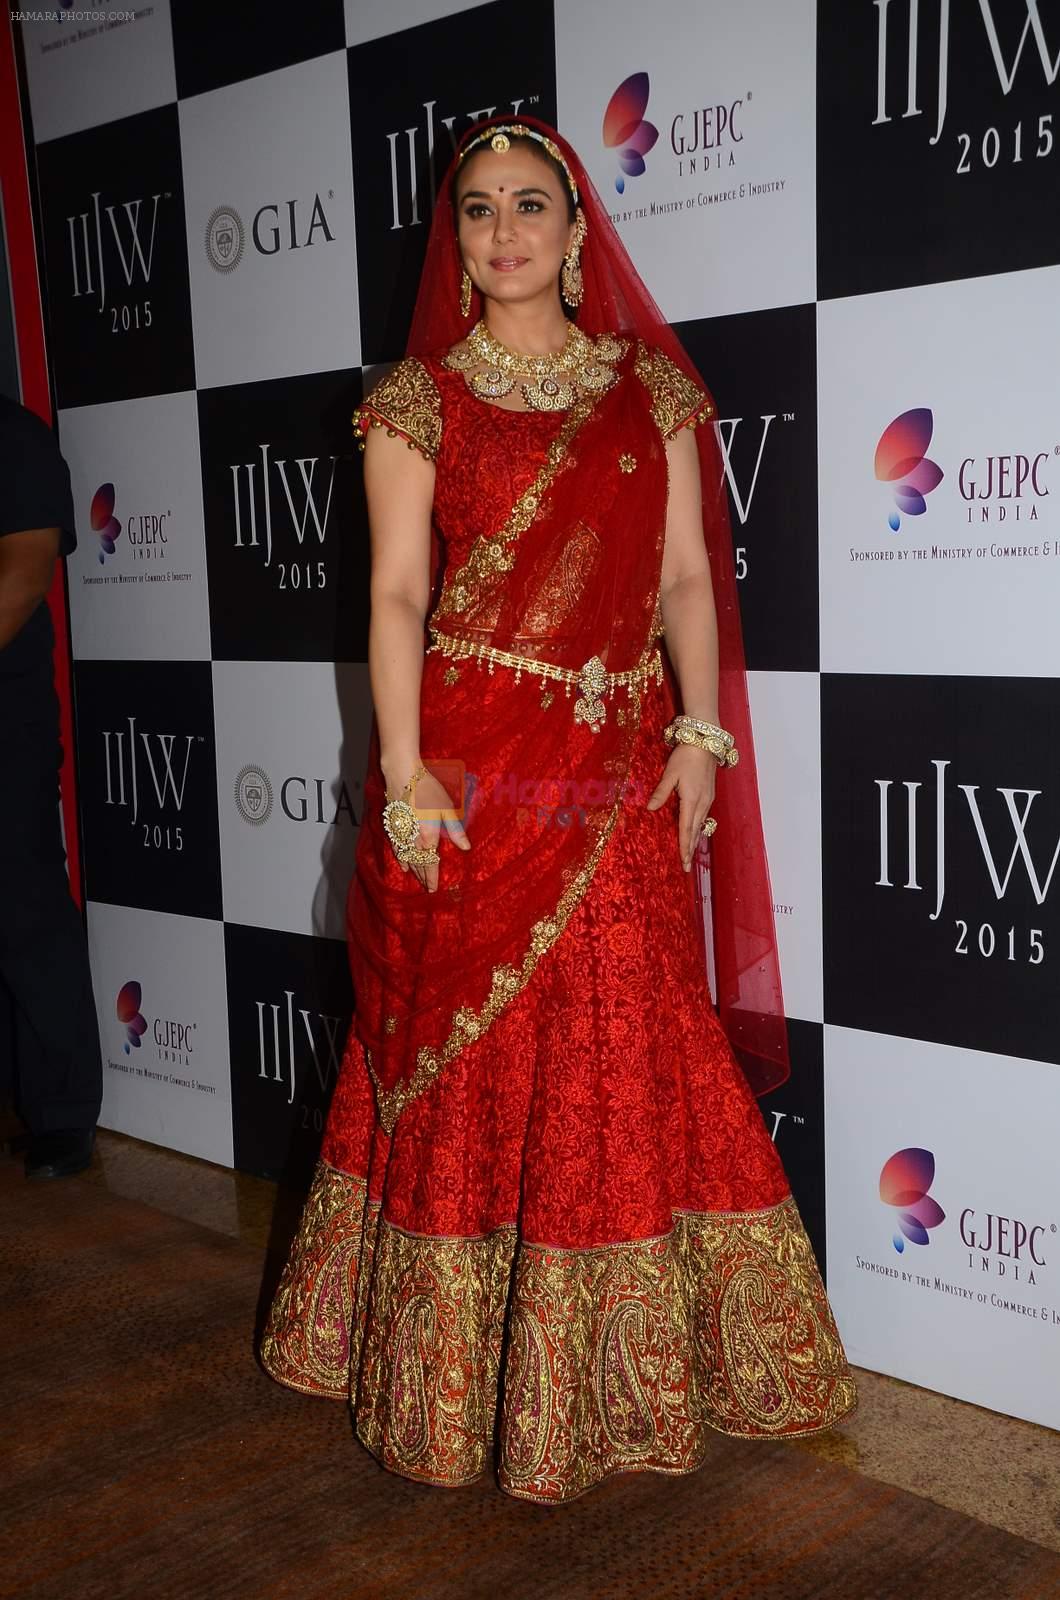 Preity Zinta on Day 3 of IIJW 2015 on 5th Aug 2015